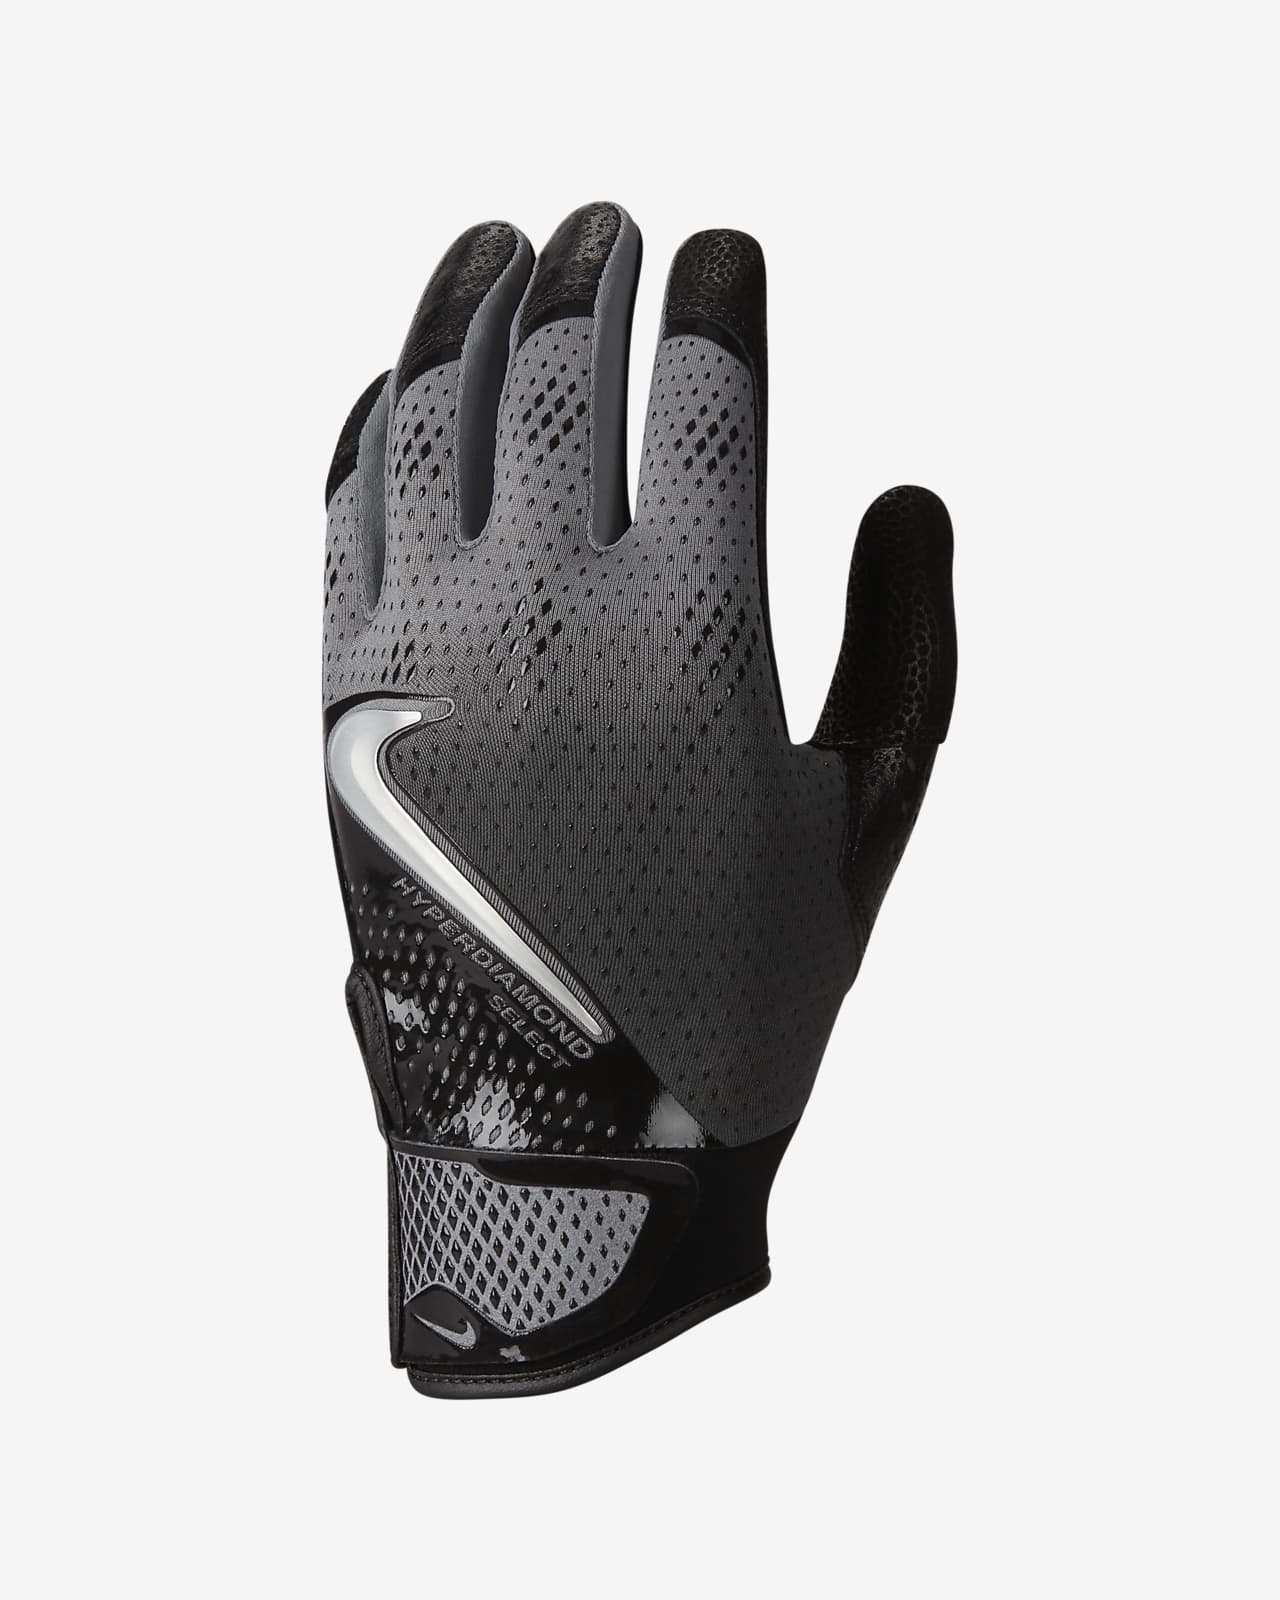 Nike Hyperdiamond Select Baseball Gloves